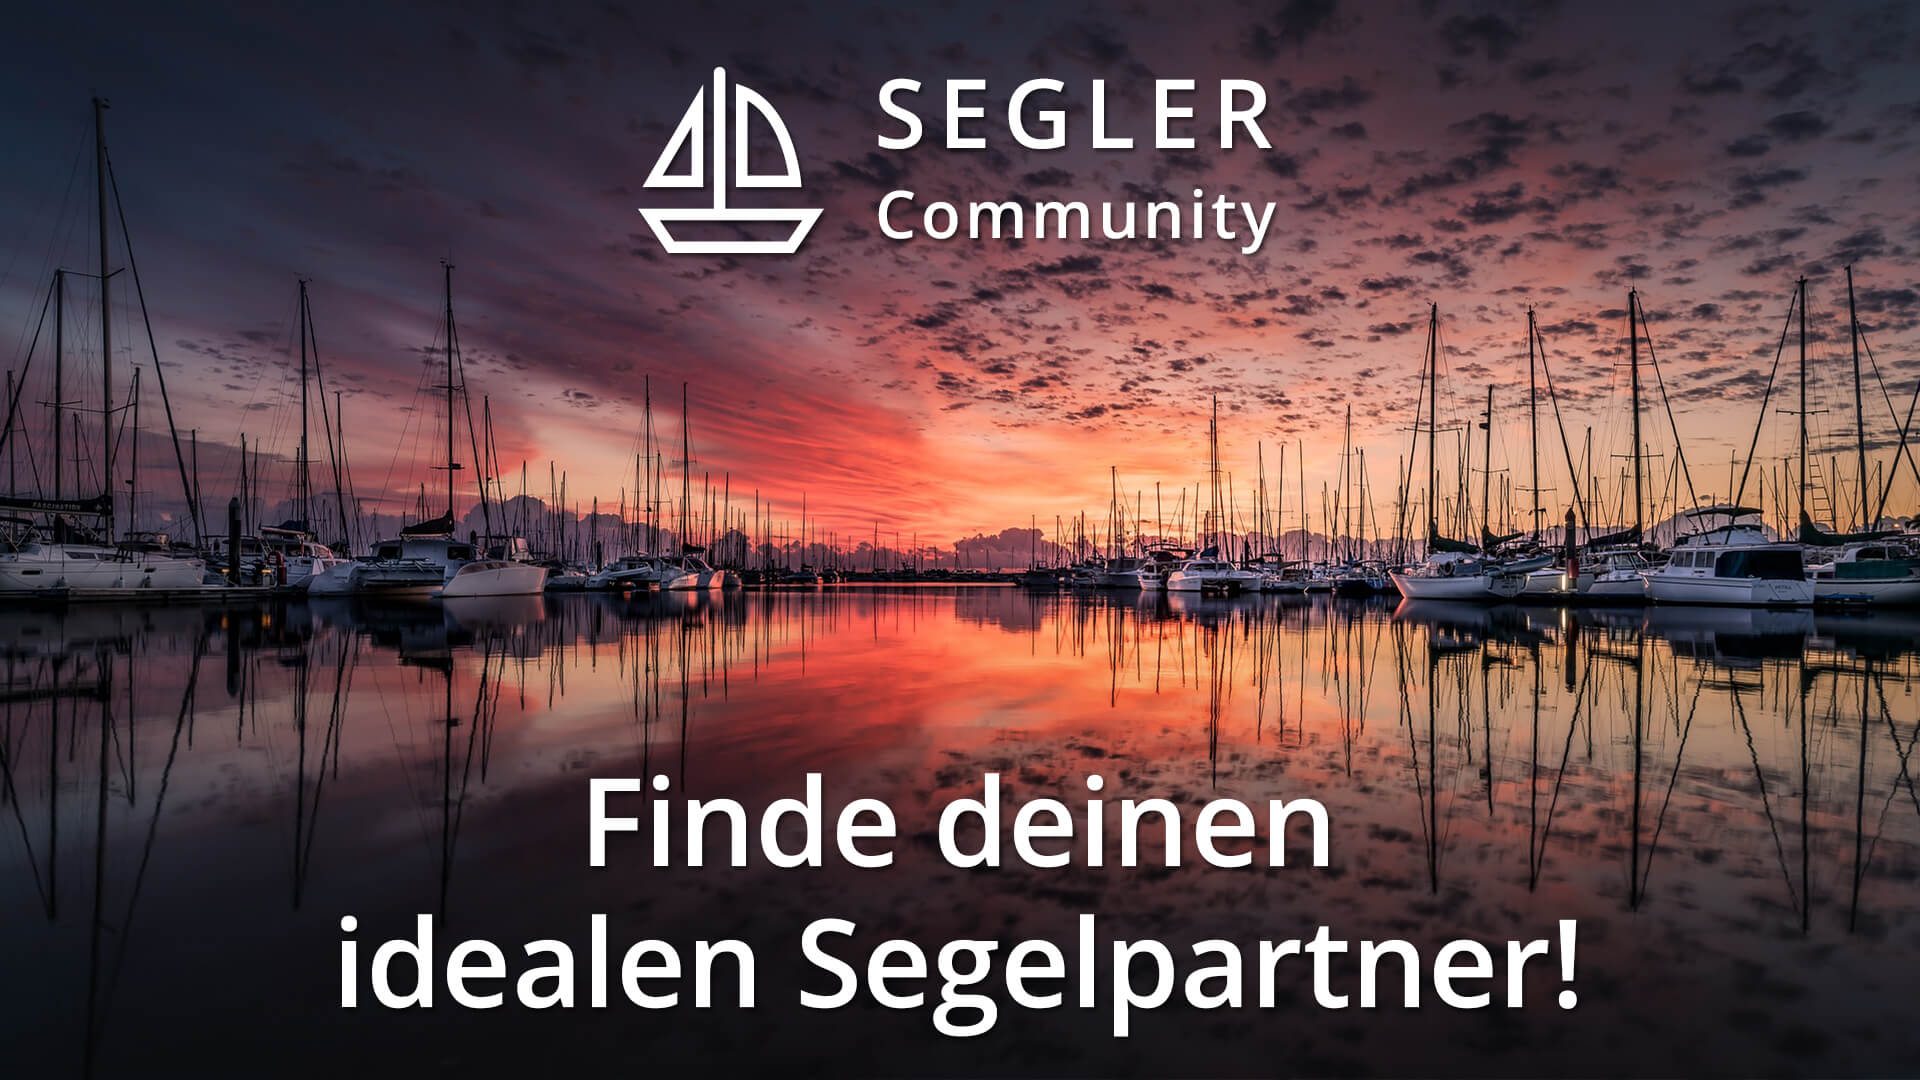 (c) Segler.community